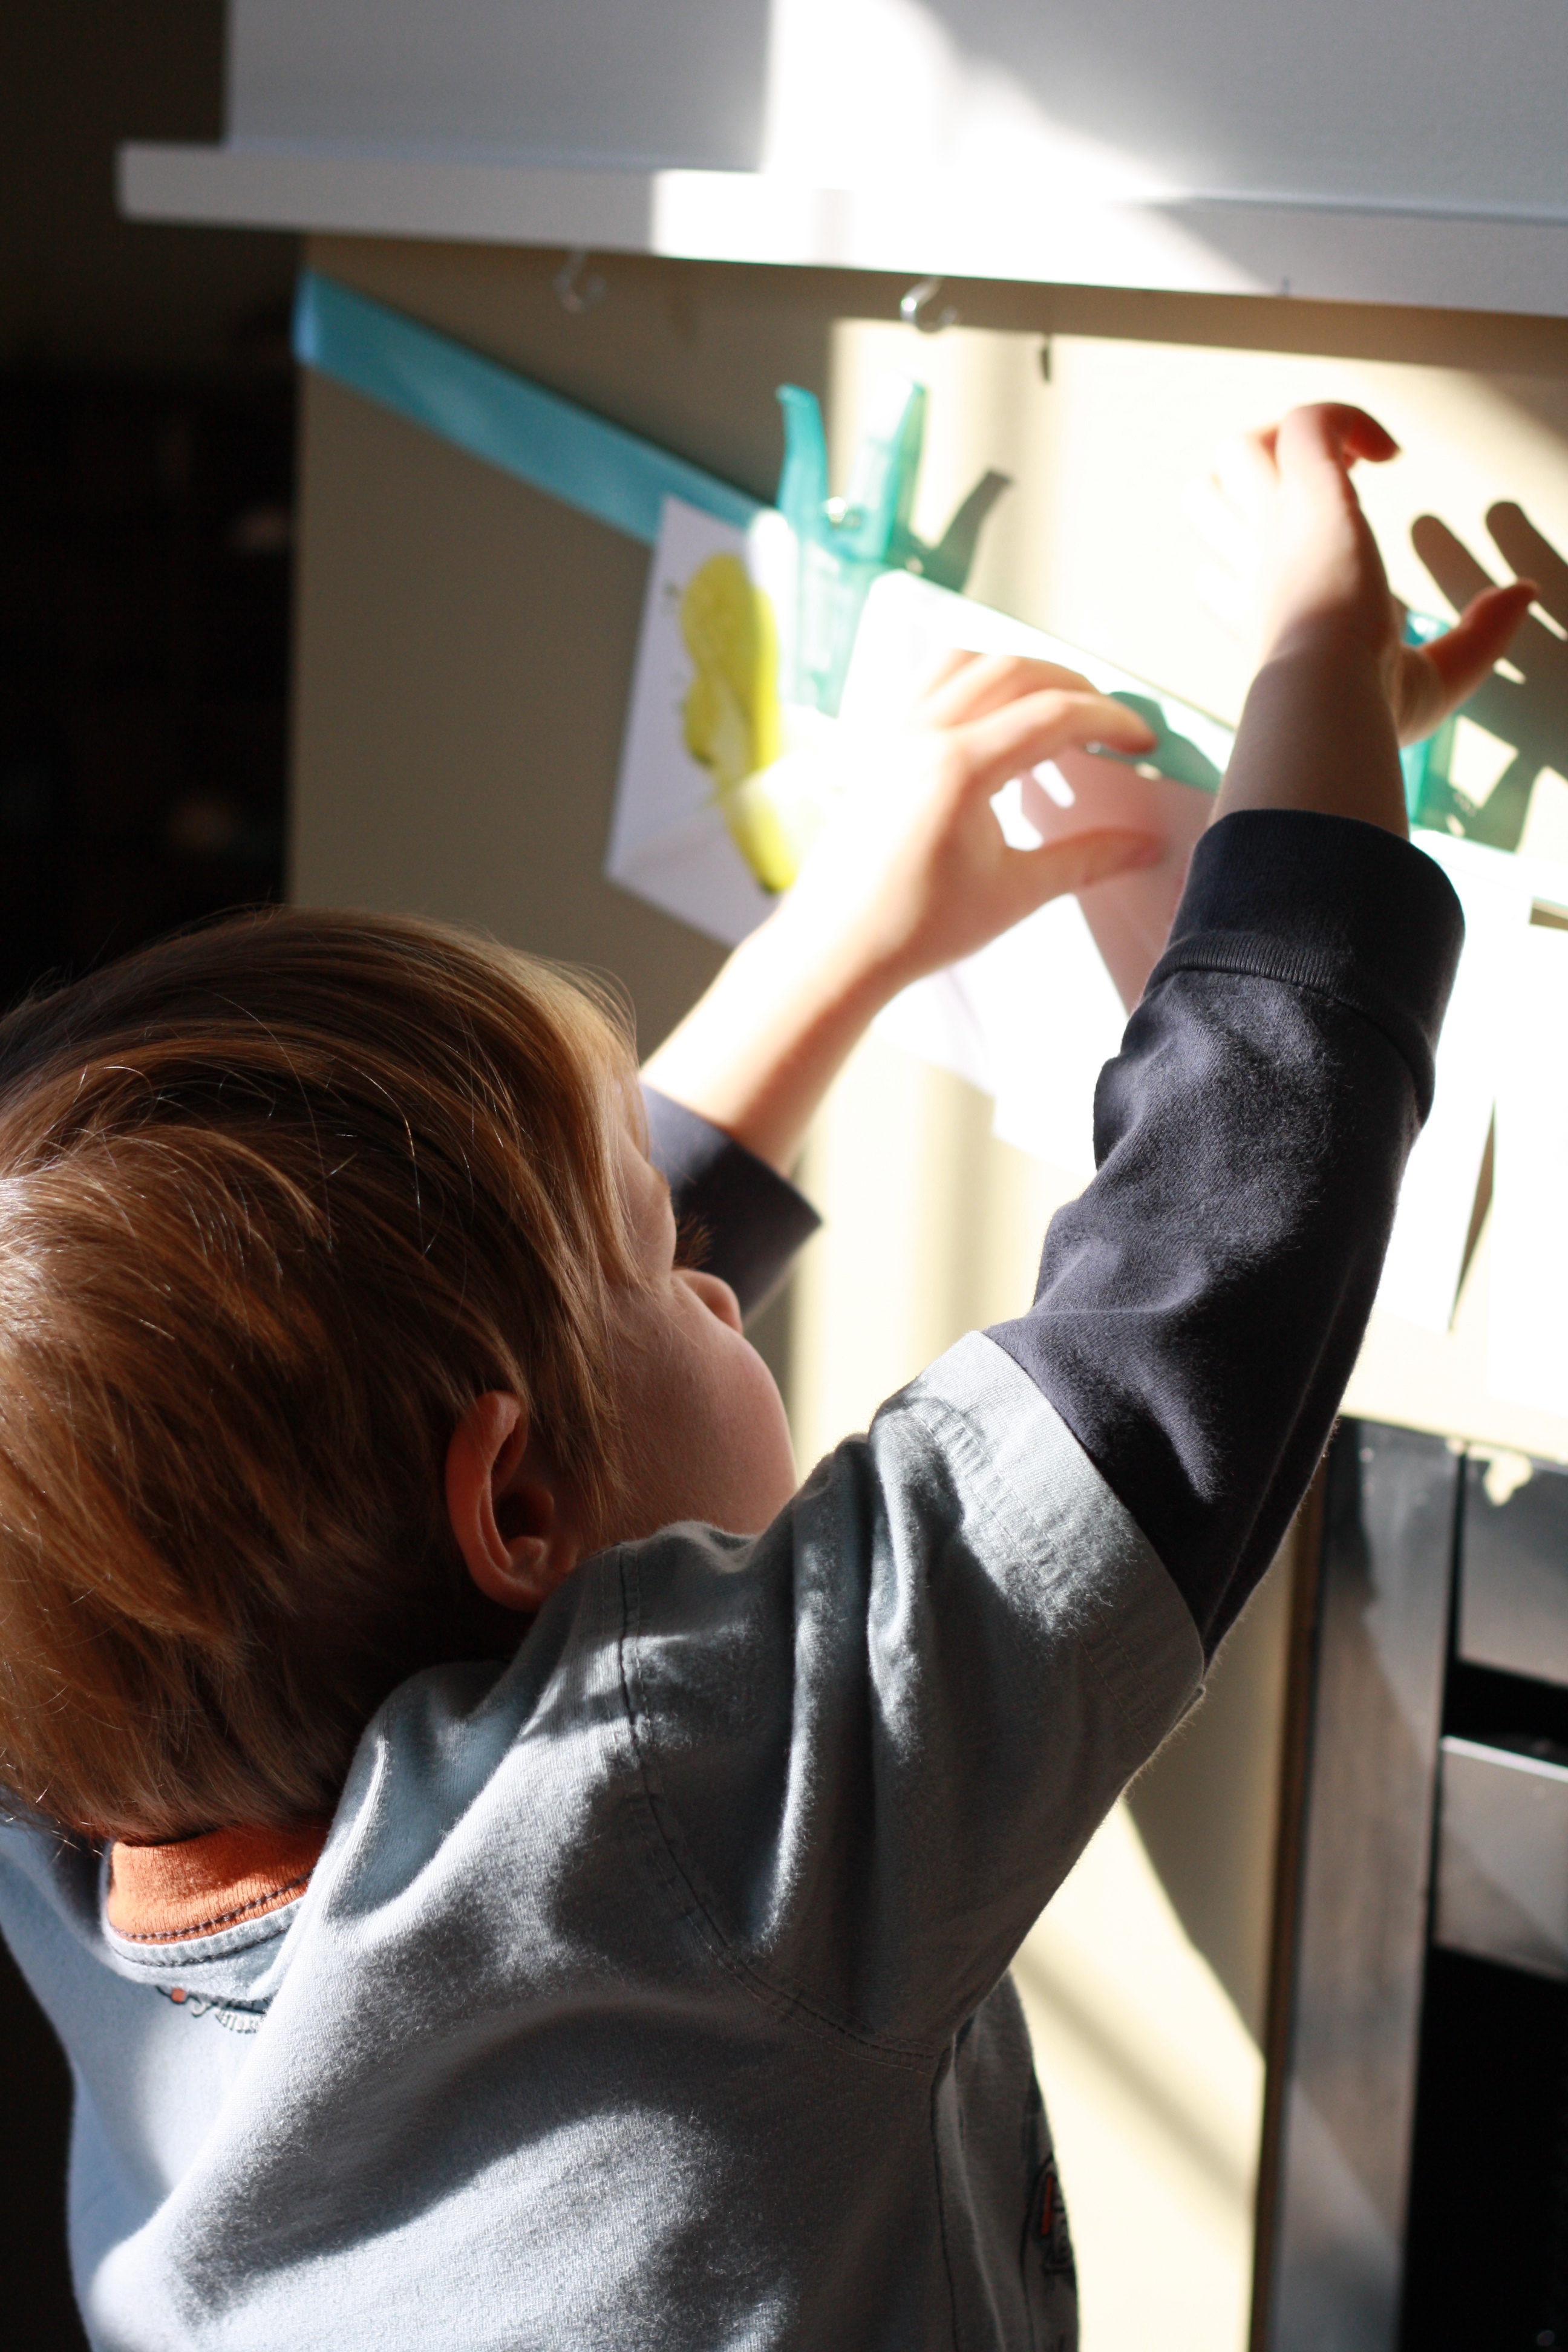 Homeschooling Methods – Exploring Montessori Activities